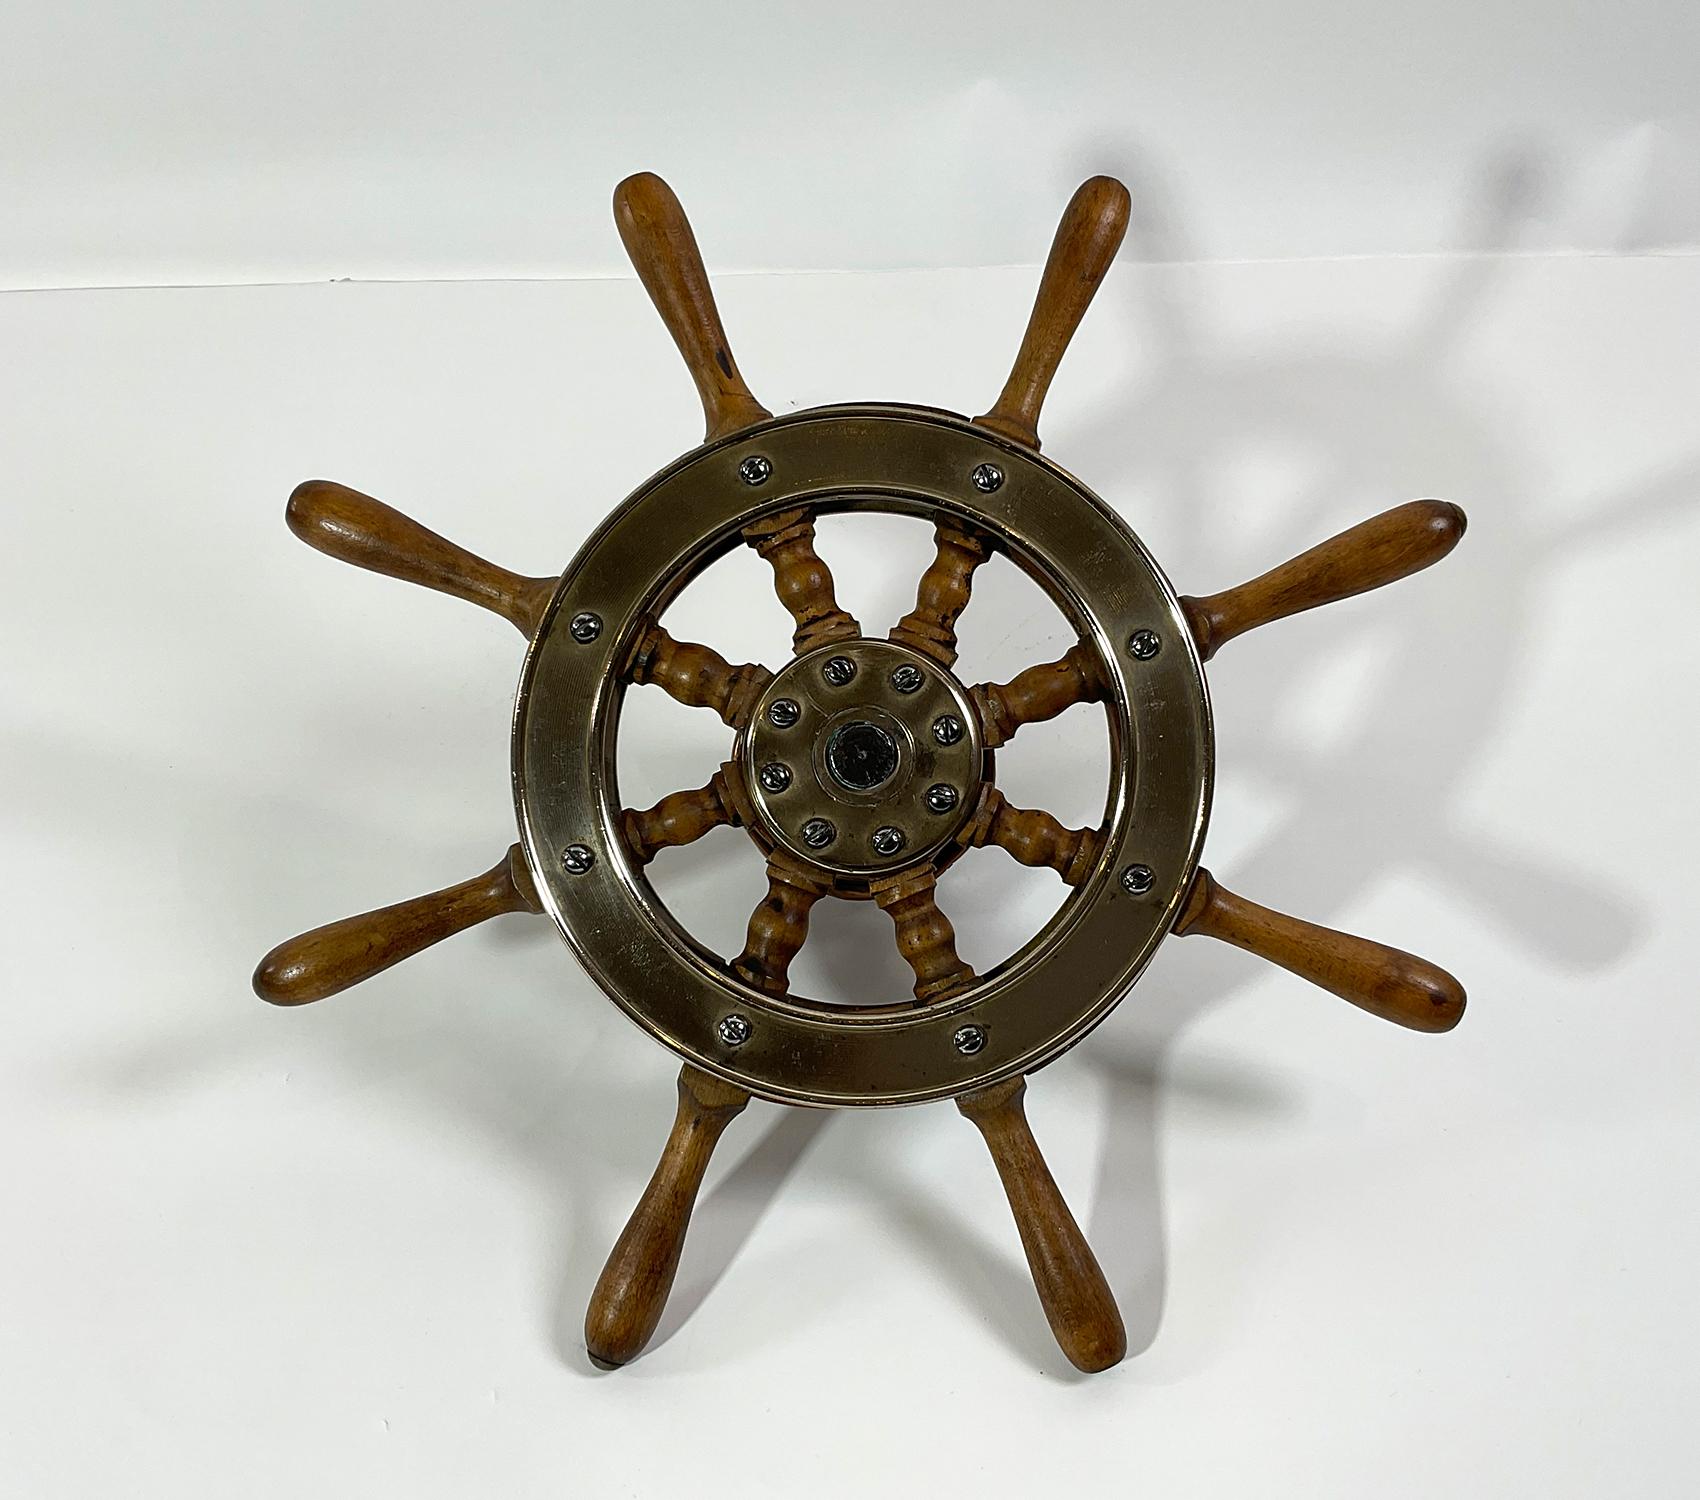 Kleines Boots- oder Jachtrad aus Ahorn und Messing. Das Rad ist mit einer Welle und einer Umlenkrolle ausgestattet. Sehr dekoratives und authentisches maritimes Relikt. Um 1920. Maße: 15 Zoll.